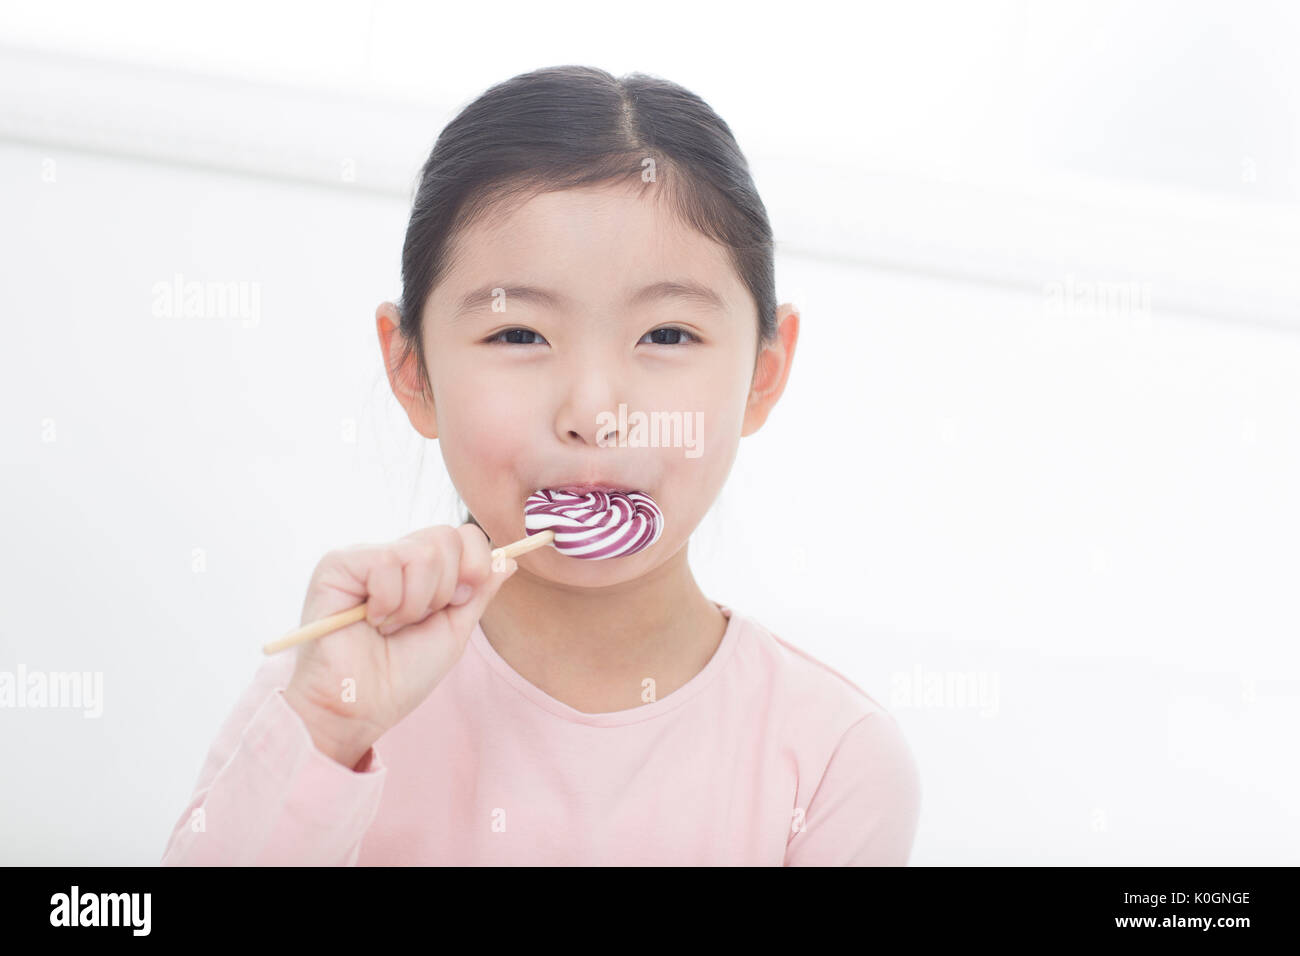 Portrait of smiling girl eating lollipop Banque D'Images